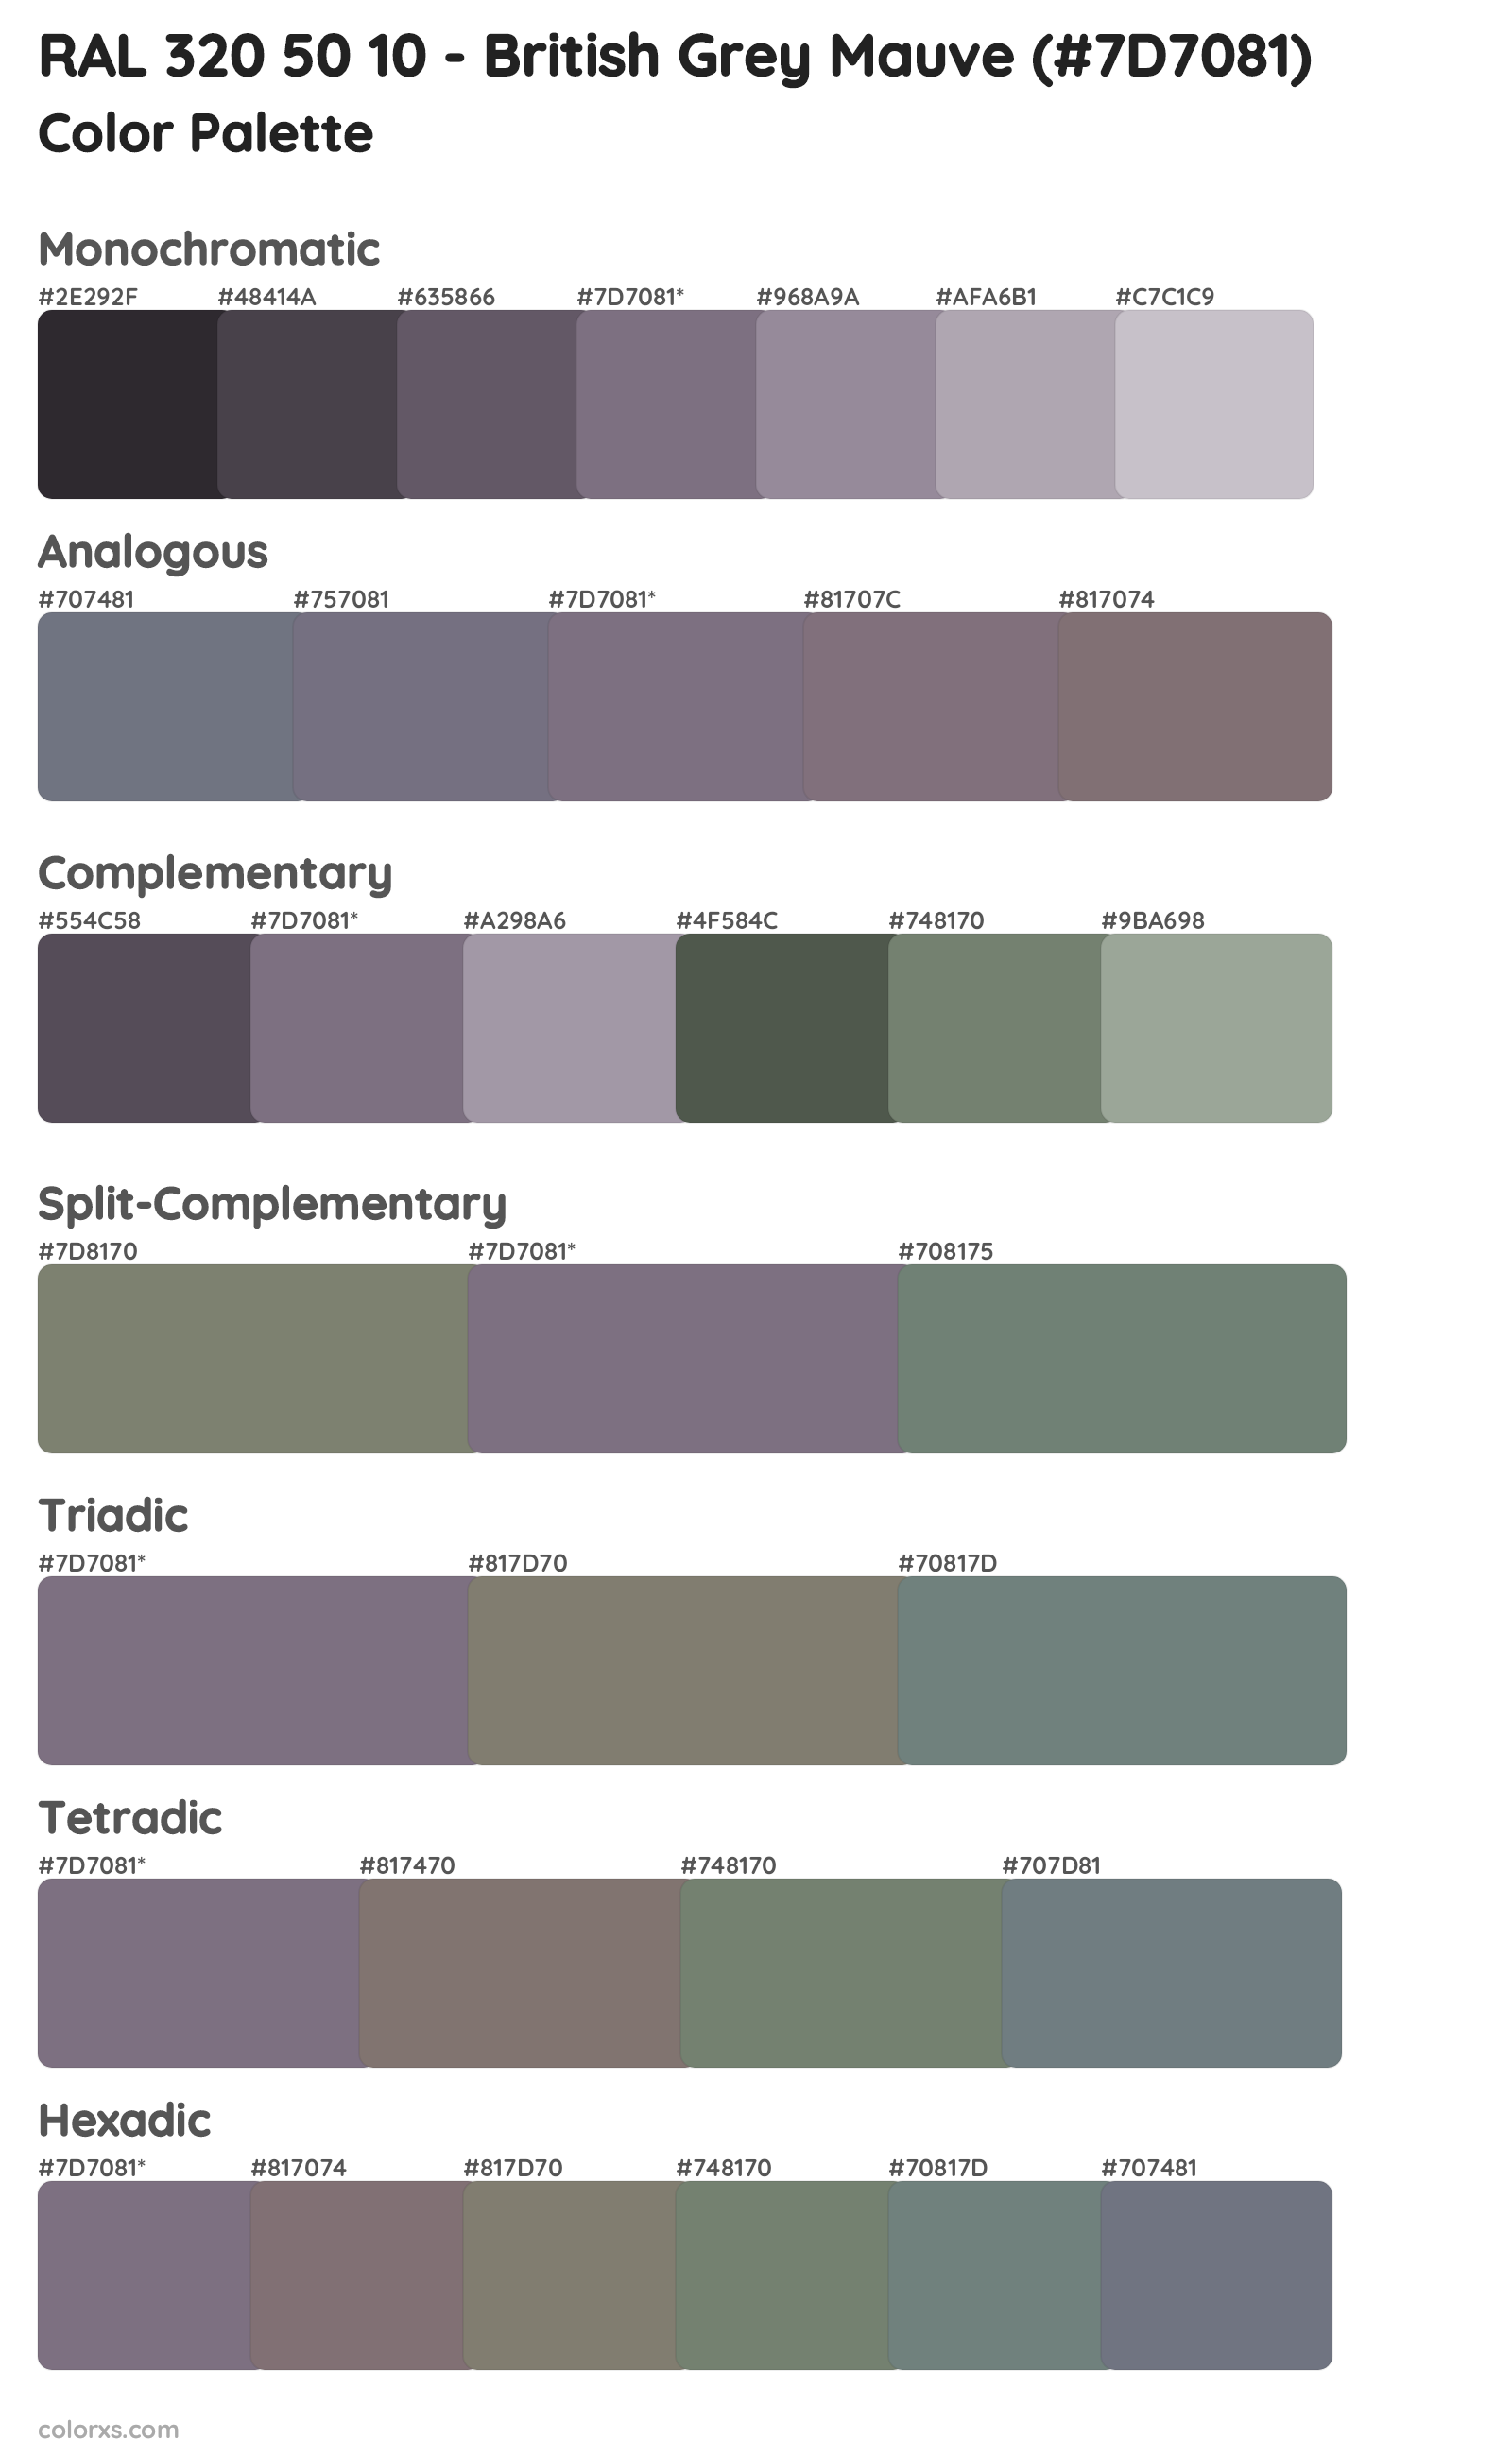 RAL 320 50 10 - British Grey Mauve Color Scheme Palettes